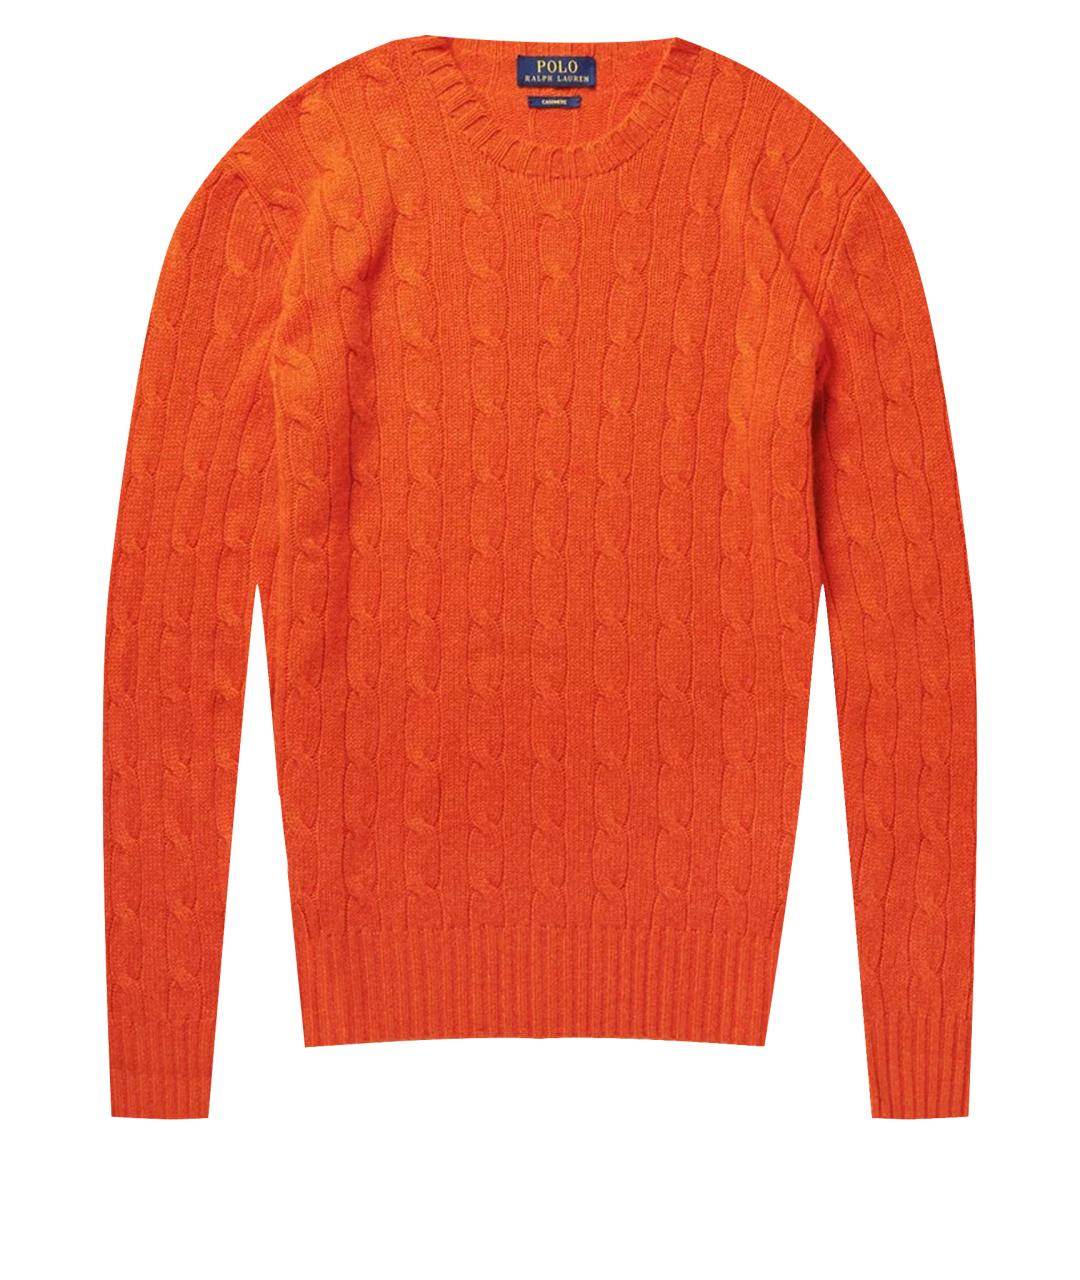 POLO RALPH LAUREN Оранжевый кашемировый джемпер / свитер, фото 1